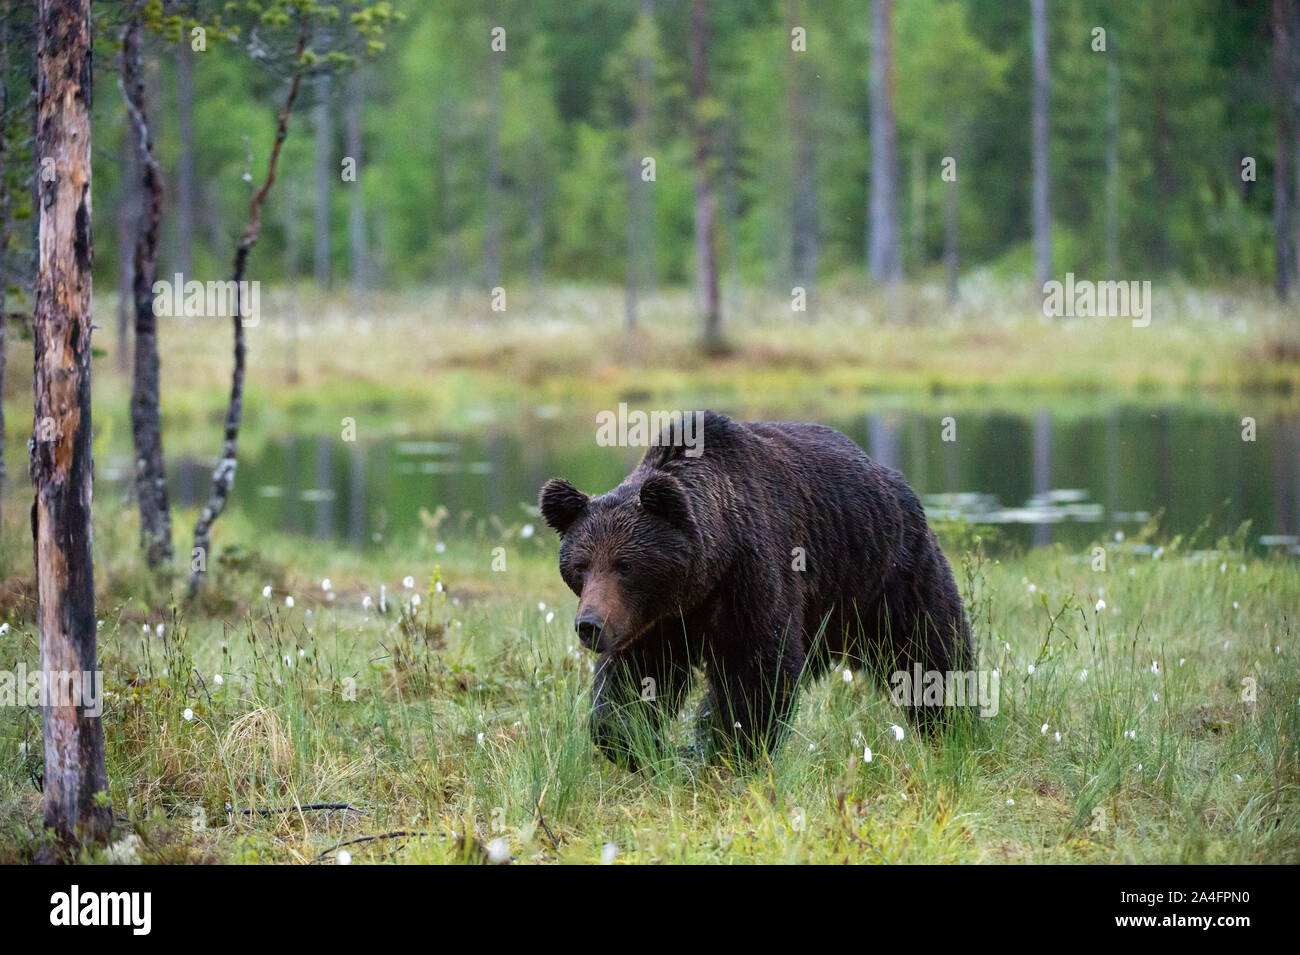 European brown bear, Ursus arctos, Kuhmo, Finland. Stock Photo